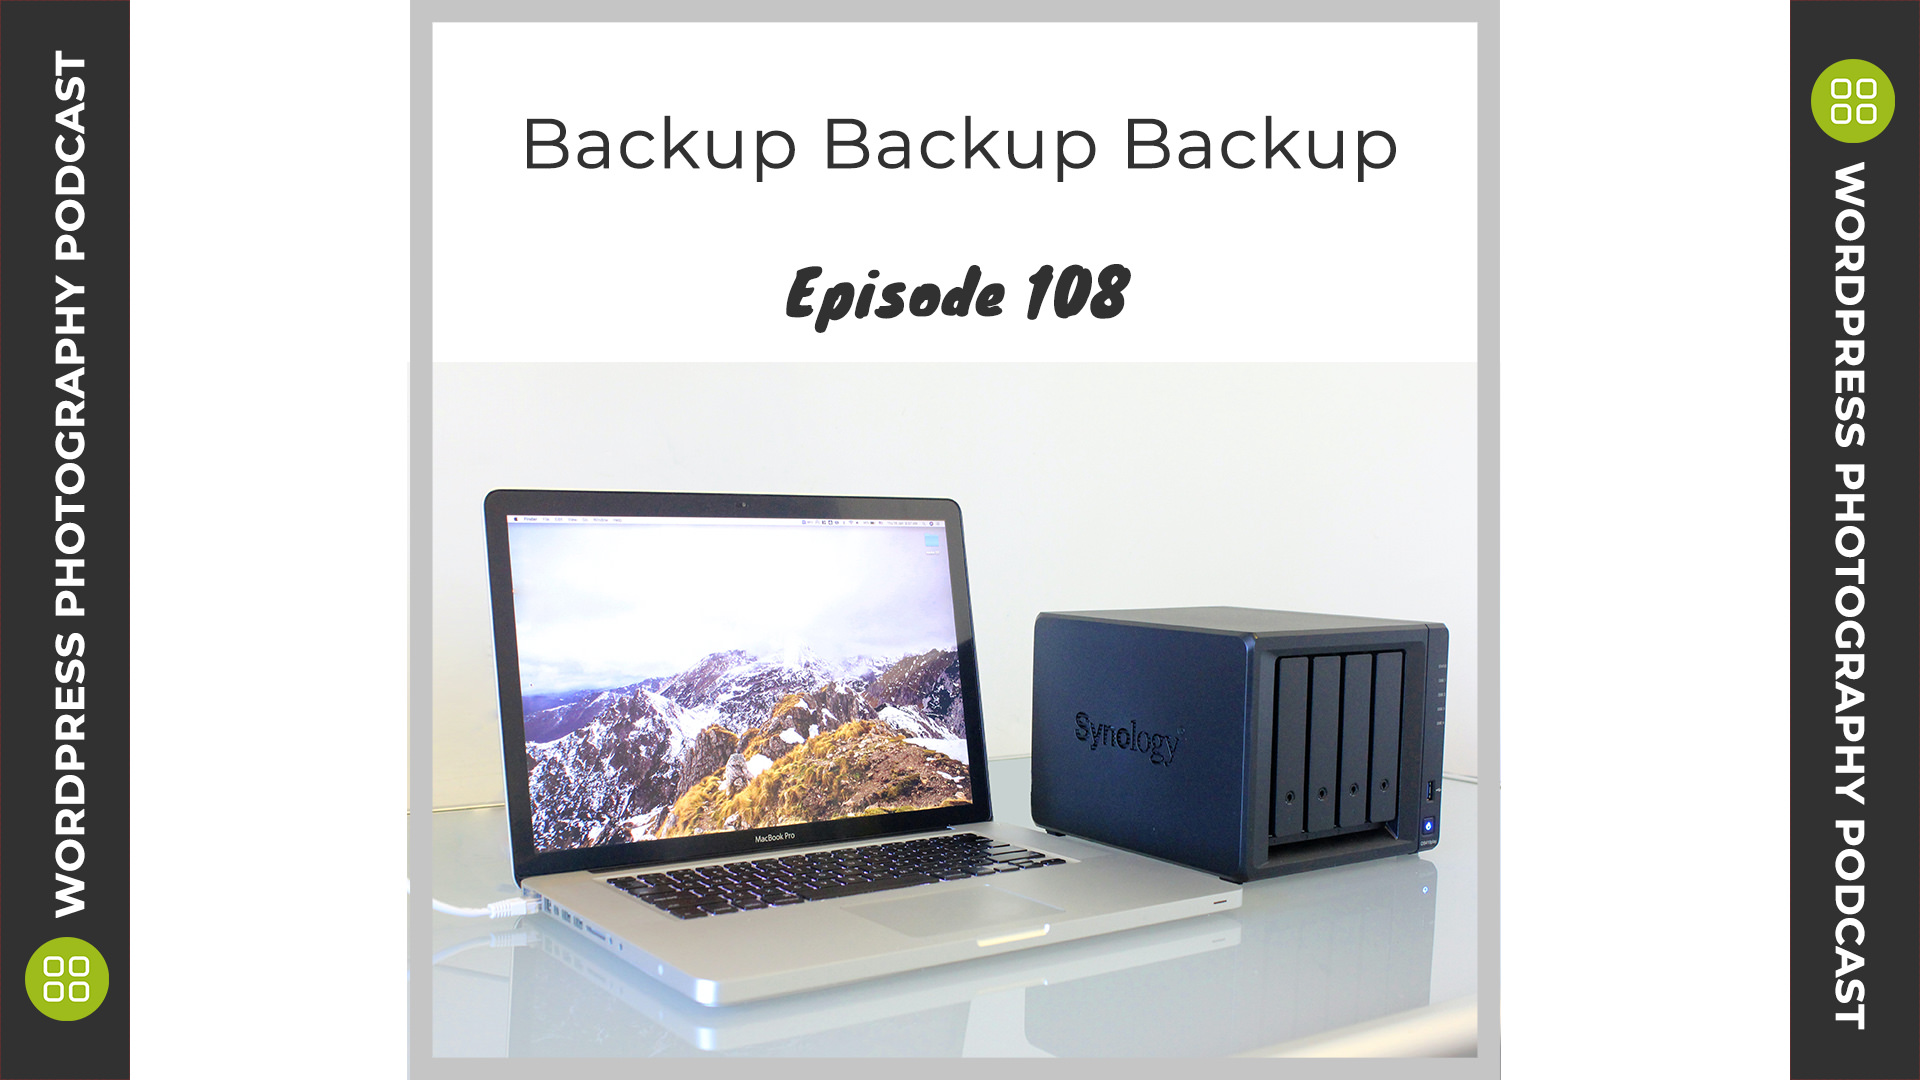 Episode 108 – Backups Backups Backups